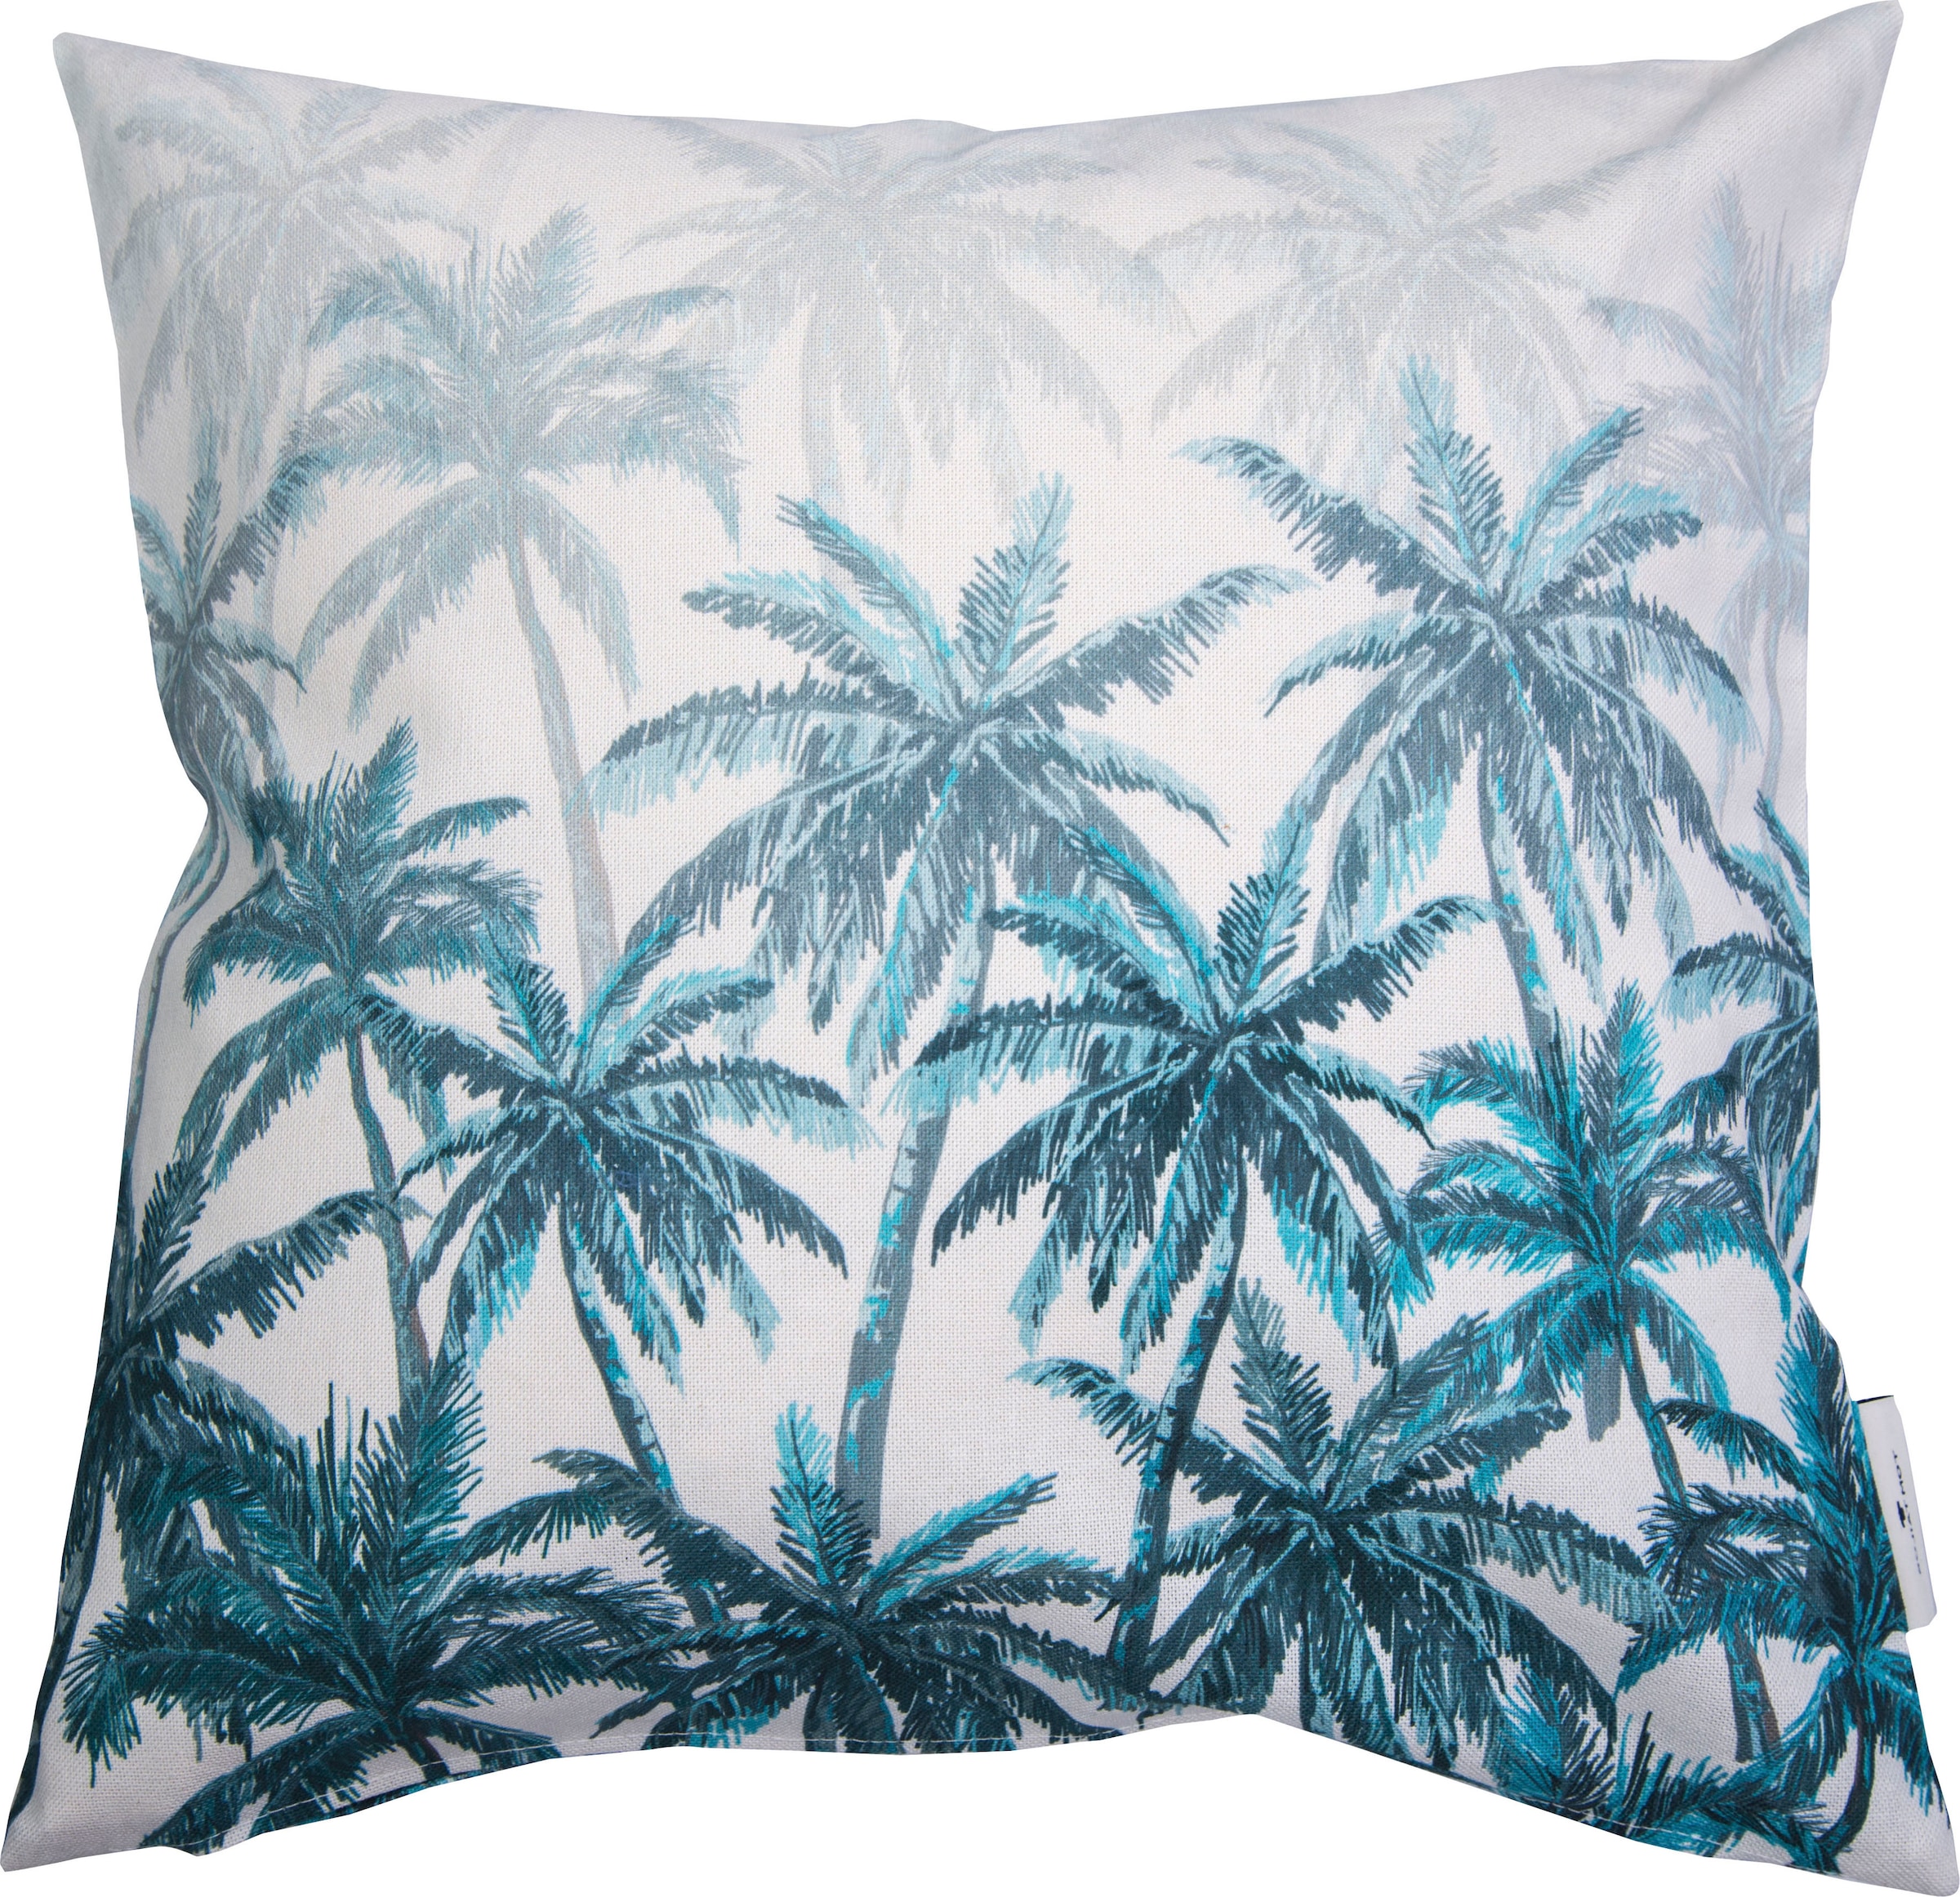 Dekokissen »Blurred Palm Forest«, mit Palmenmotiven, Kissenhülle ohne Füllung, 1 Stück